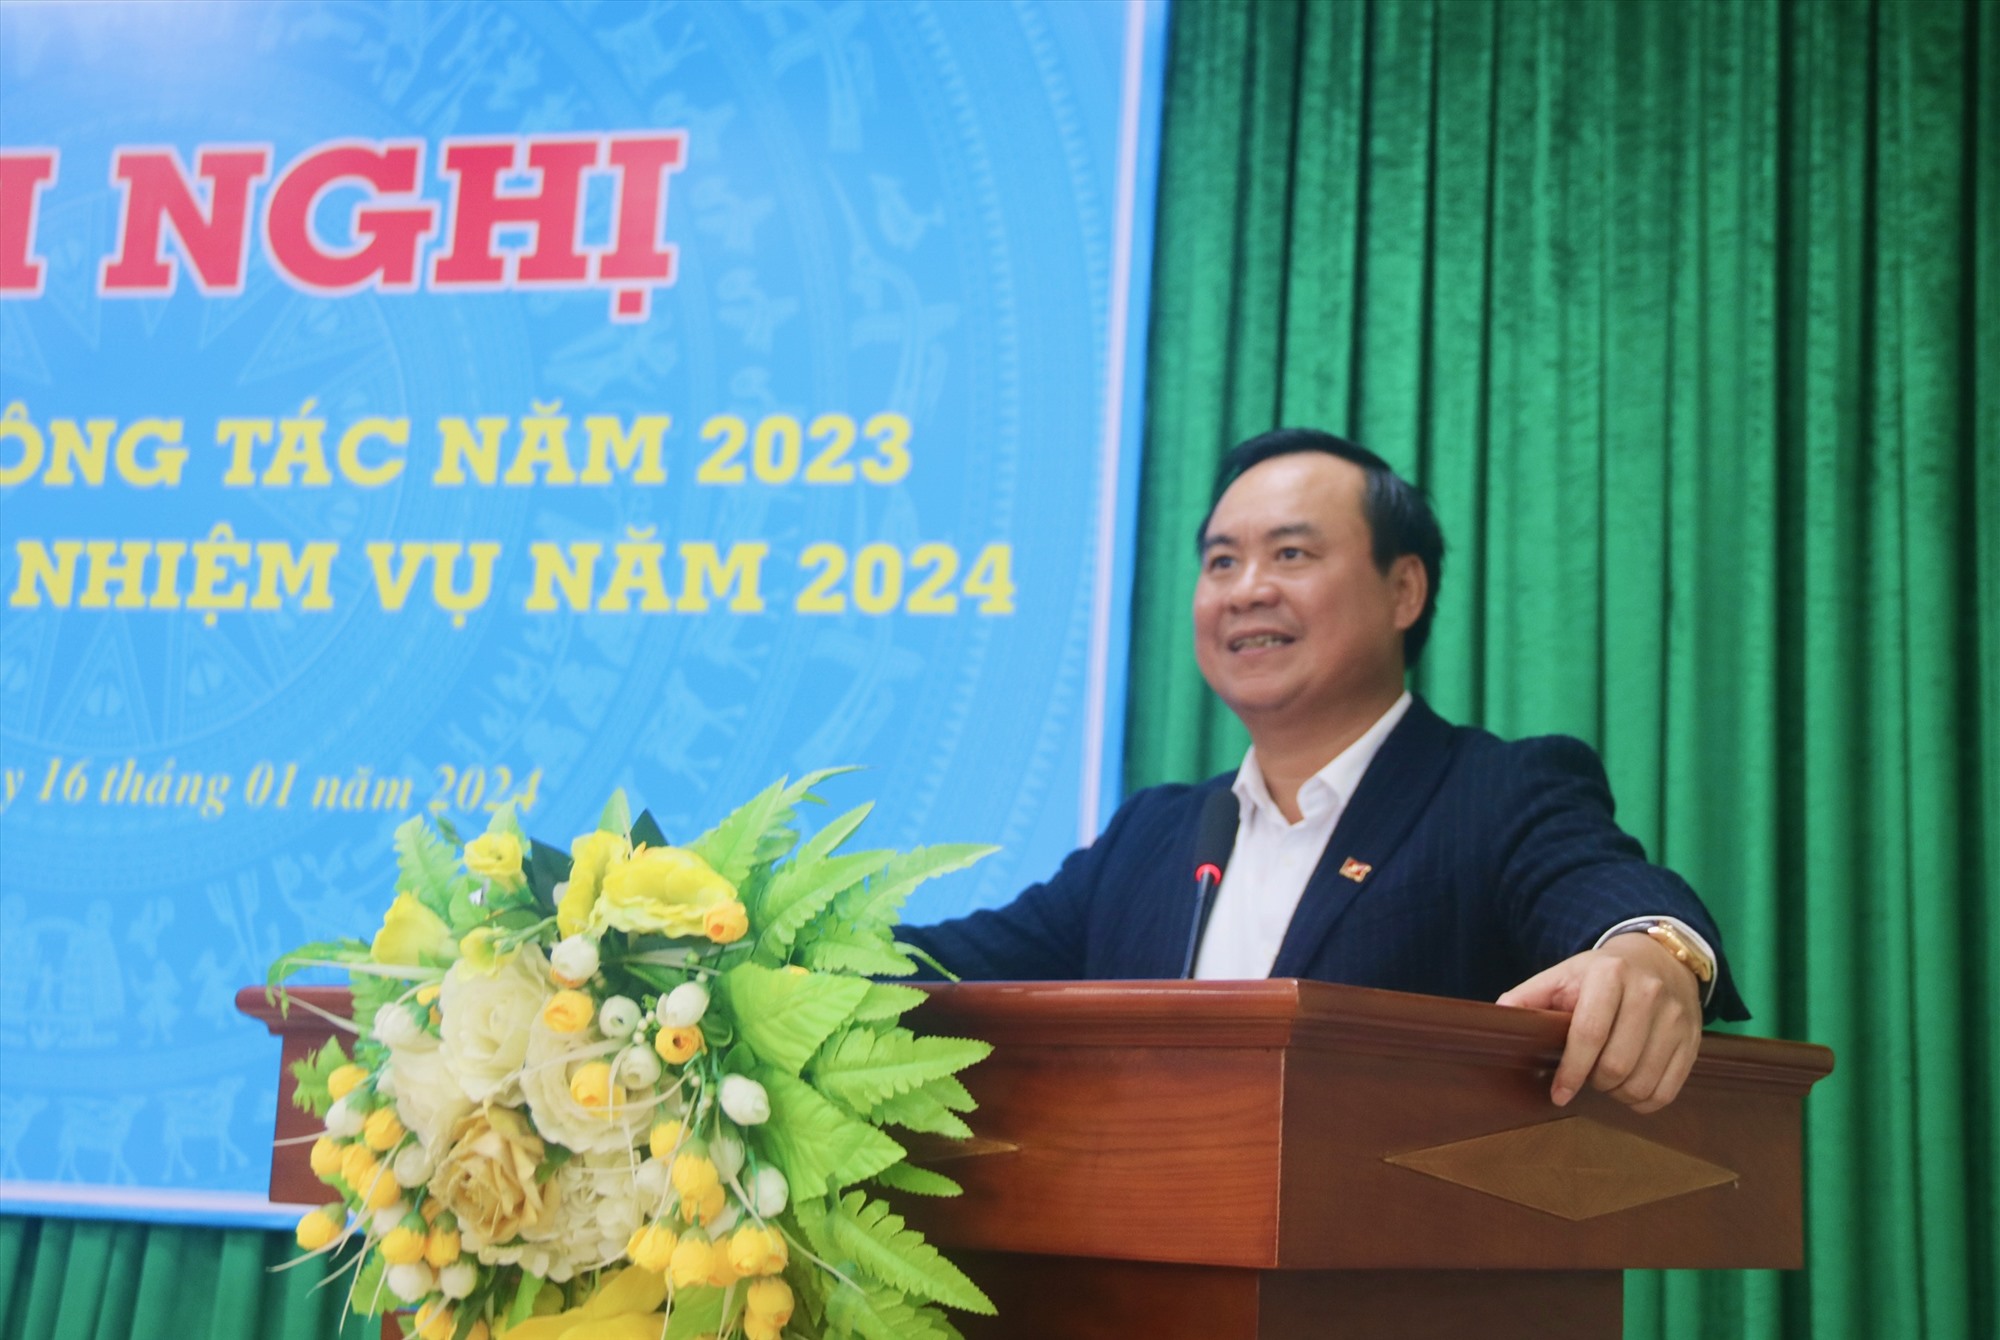 Chủ tịch UBND tỉnh Võ Văn Hưng yêu cầu Sở Kế hoạch và Đầu tư cần nâng cao hơn nữa chỉ số cải cách hành chính, chỉ số PCI và đẩy mạnh chuyển đổi số trong hoạt động chuyên môn của đơn vị - Ảnh: N.B